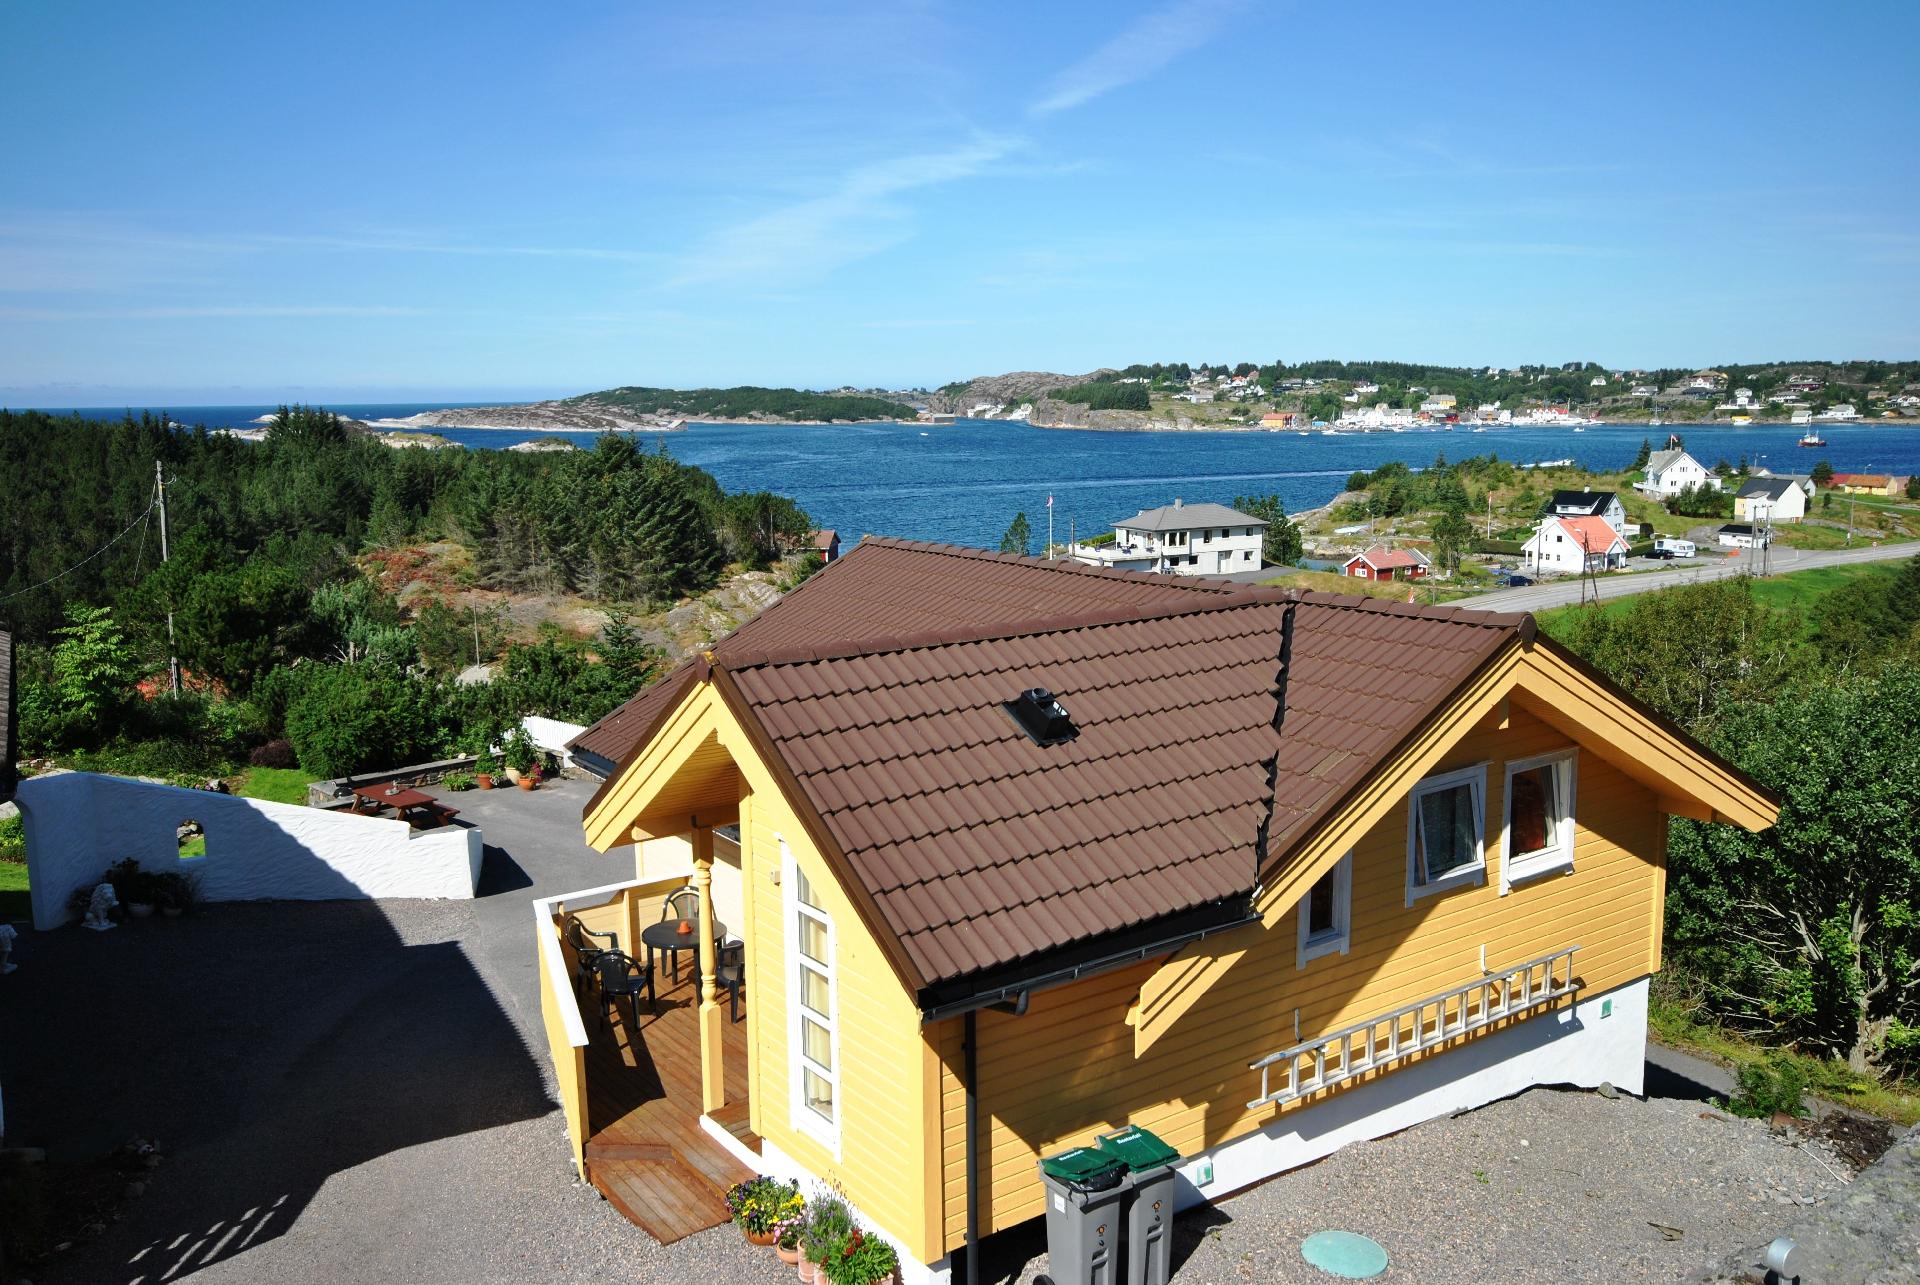 Gemütliches Ferienhaus mit Balkon und Garten  Ferienhaus in Norwegen